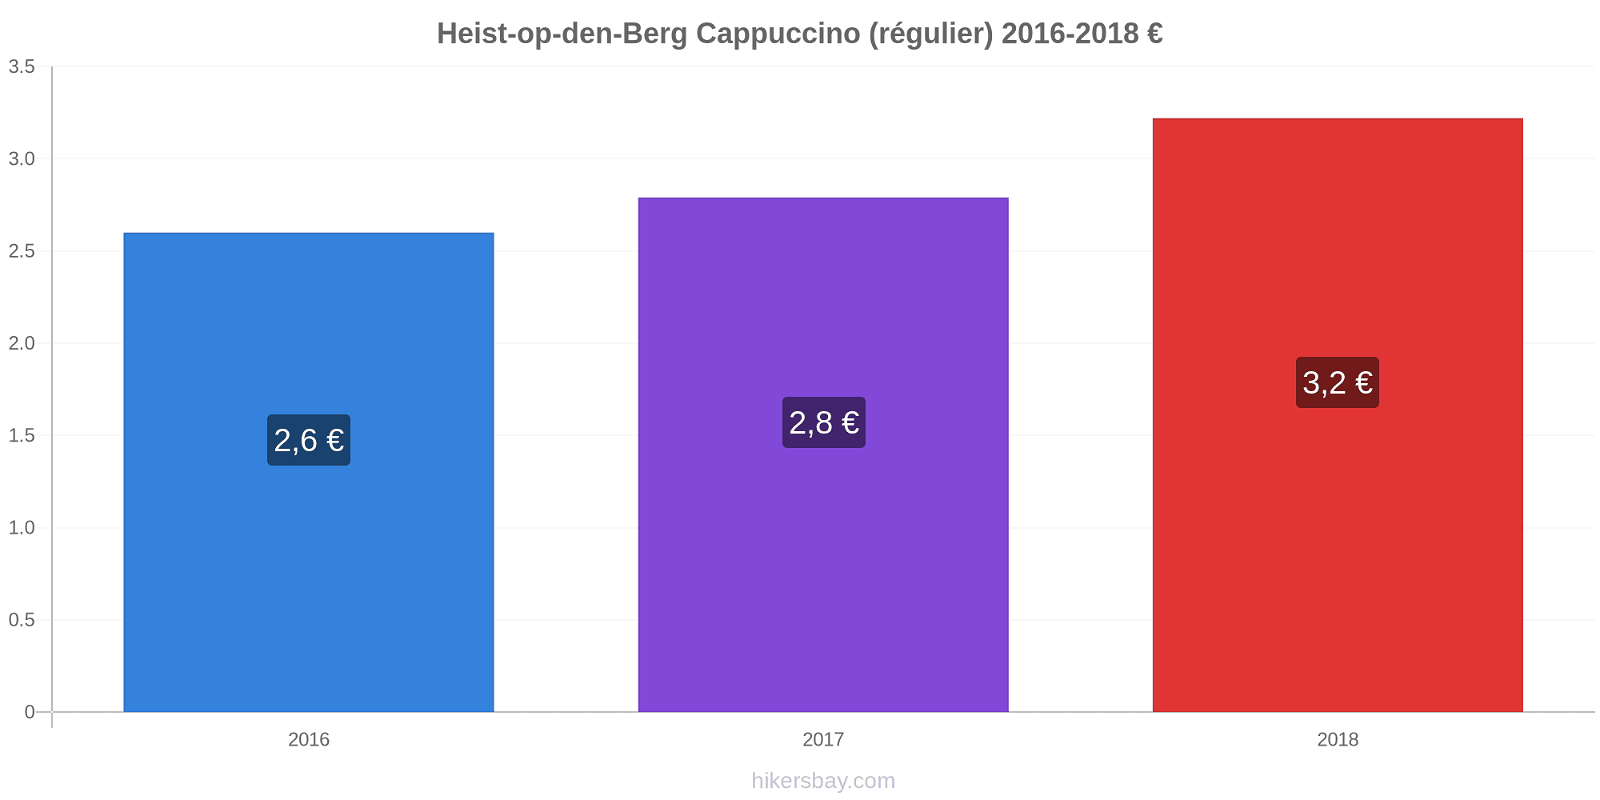 Heist-op-den-Berg changements de prix Cappuccino (régulier) hikersbay.com